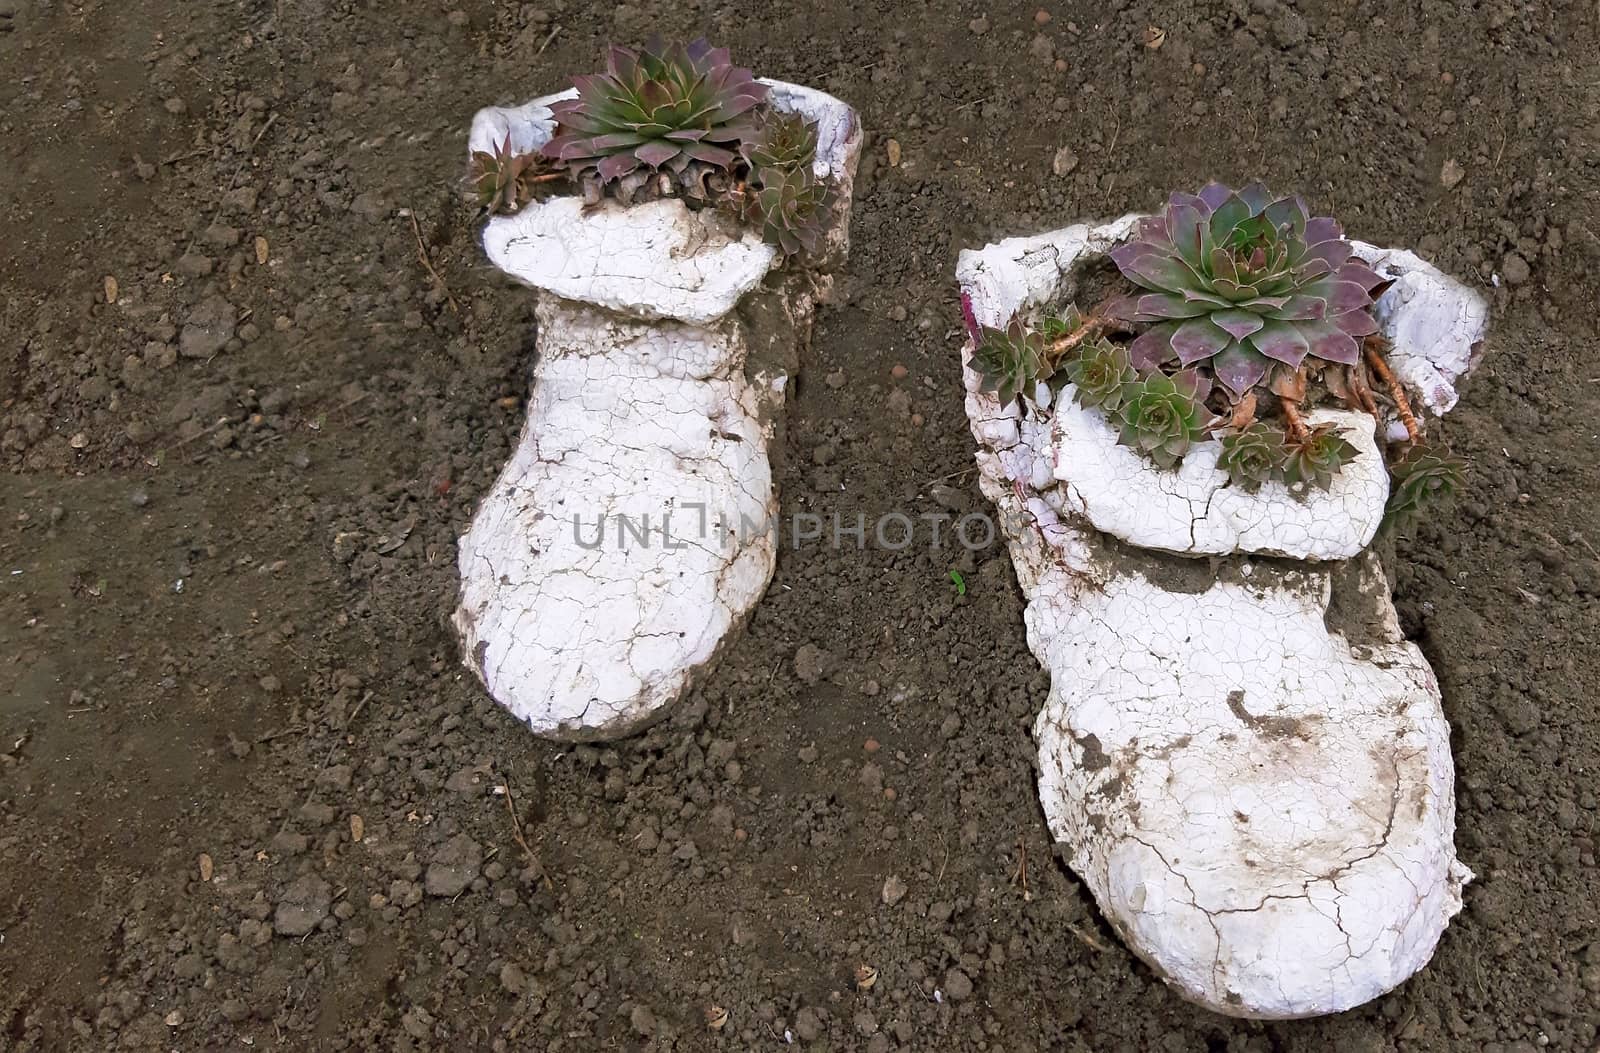 Sempervivum succulent plants planted in a form of shoes.